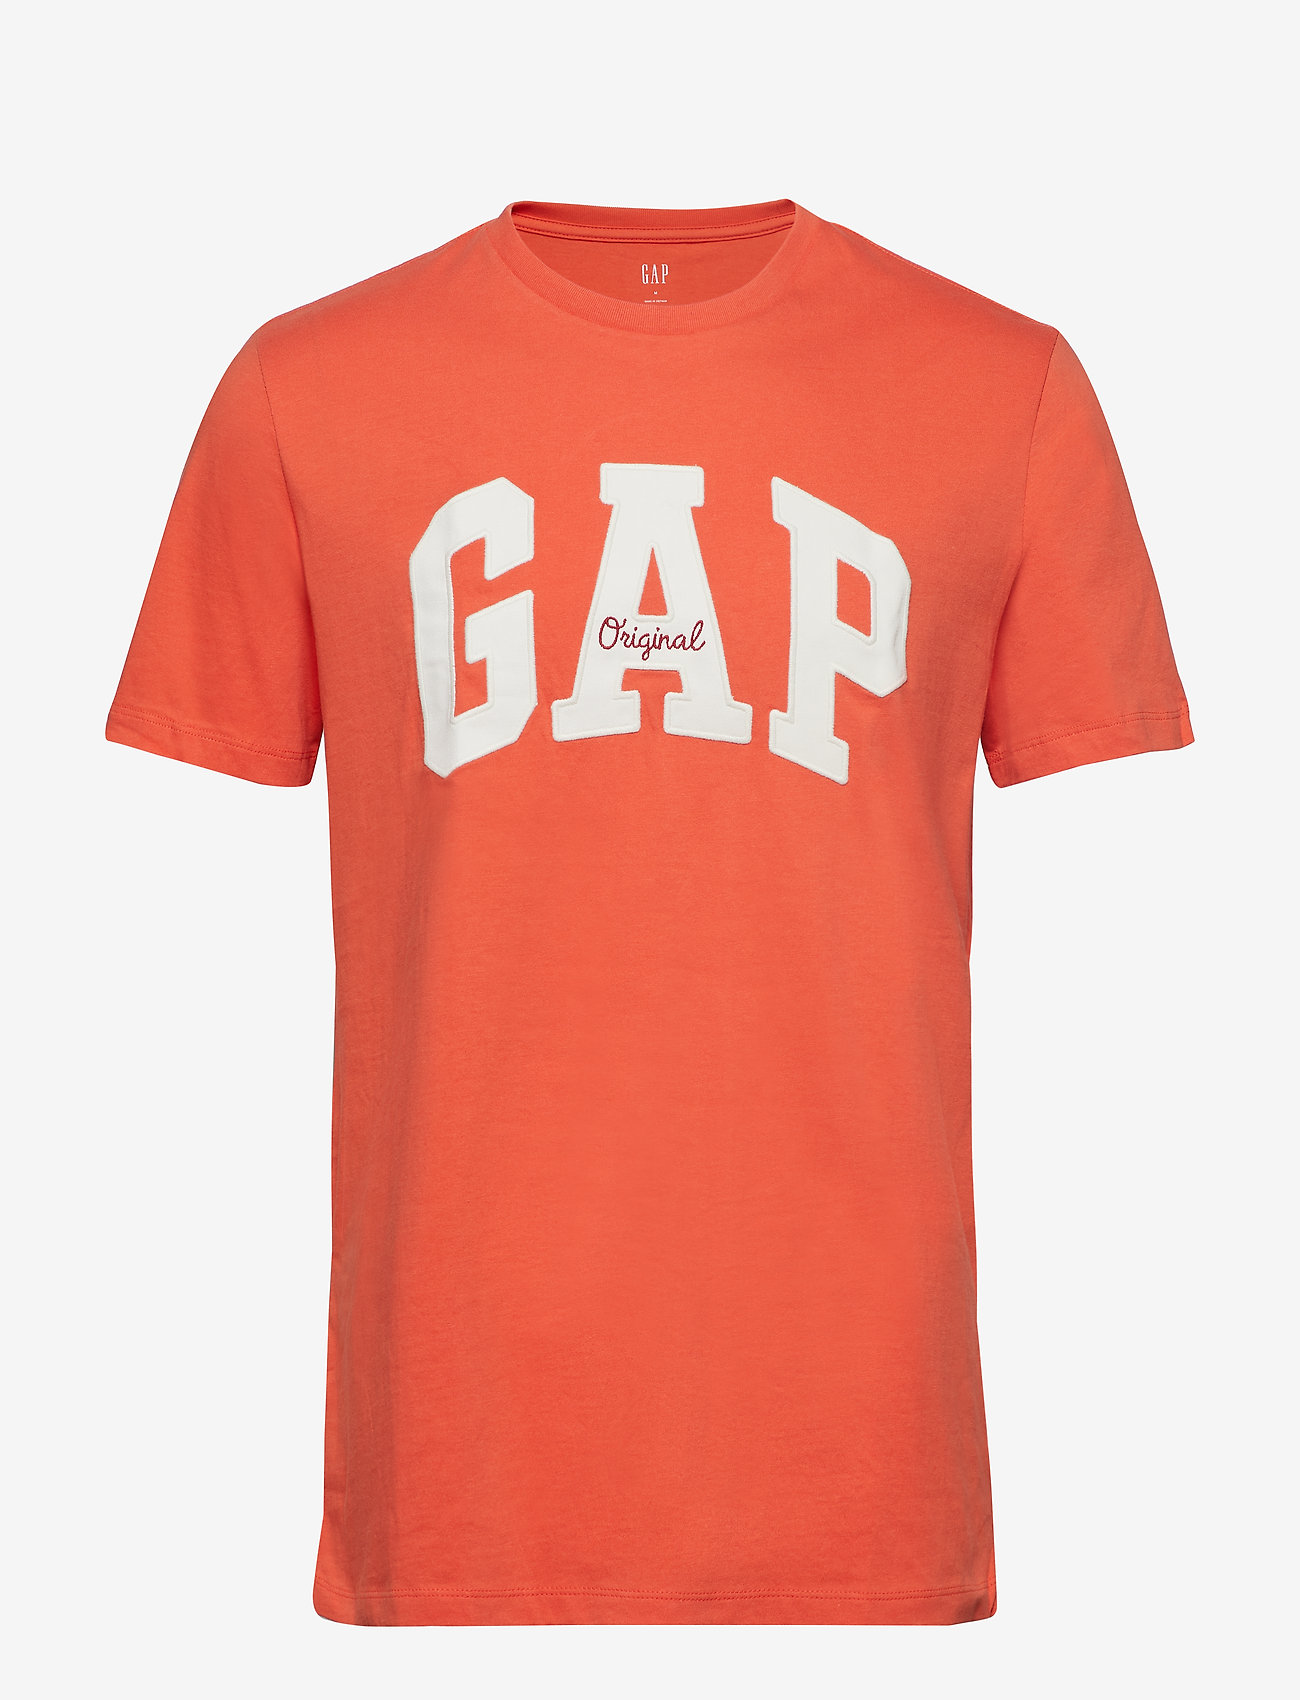 gap orange t shirt